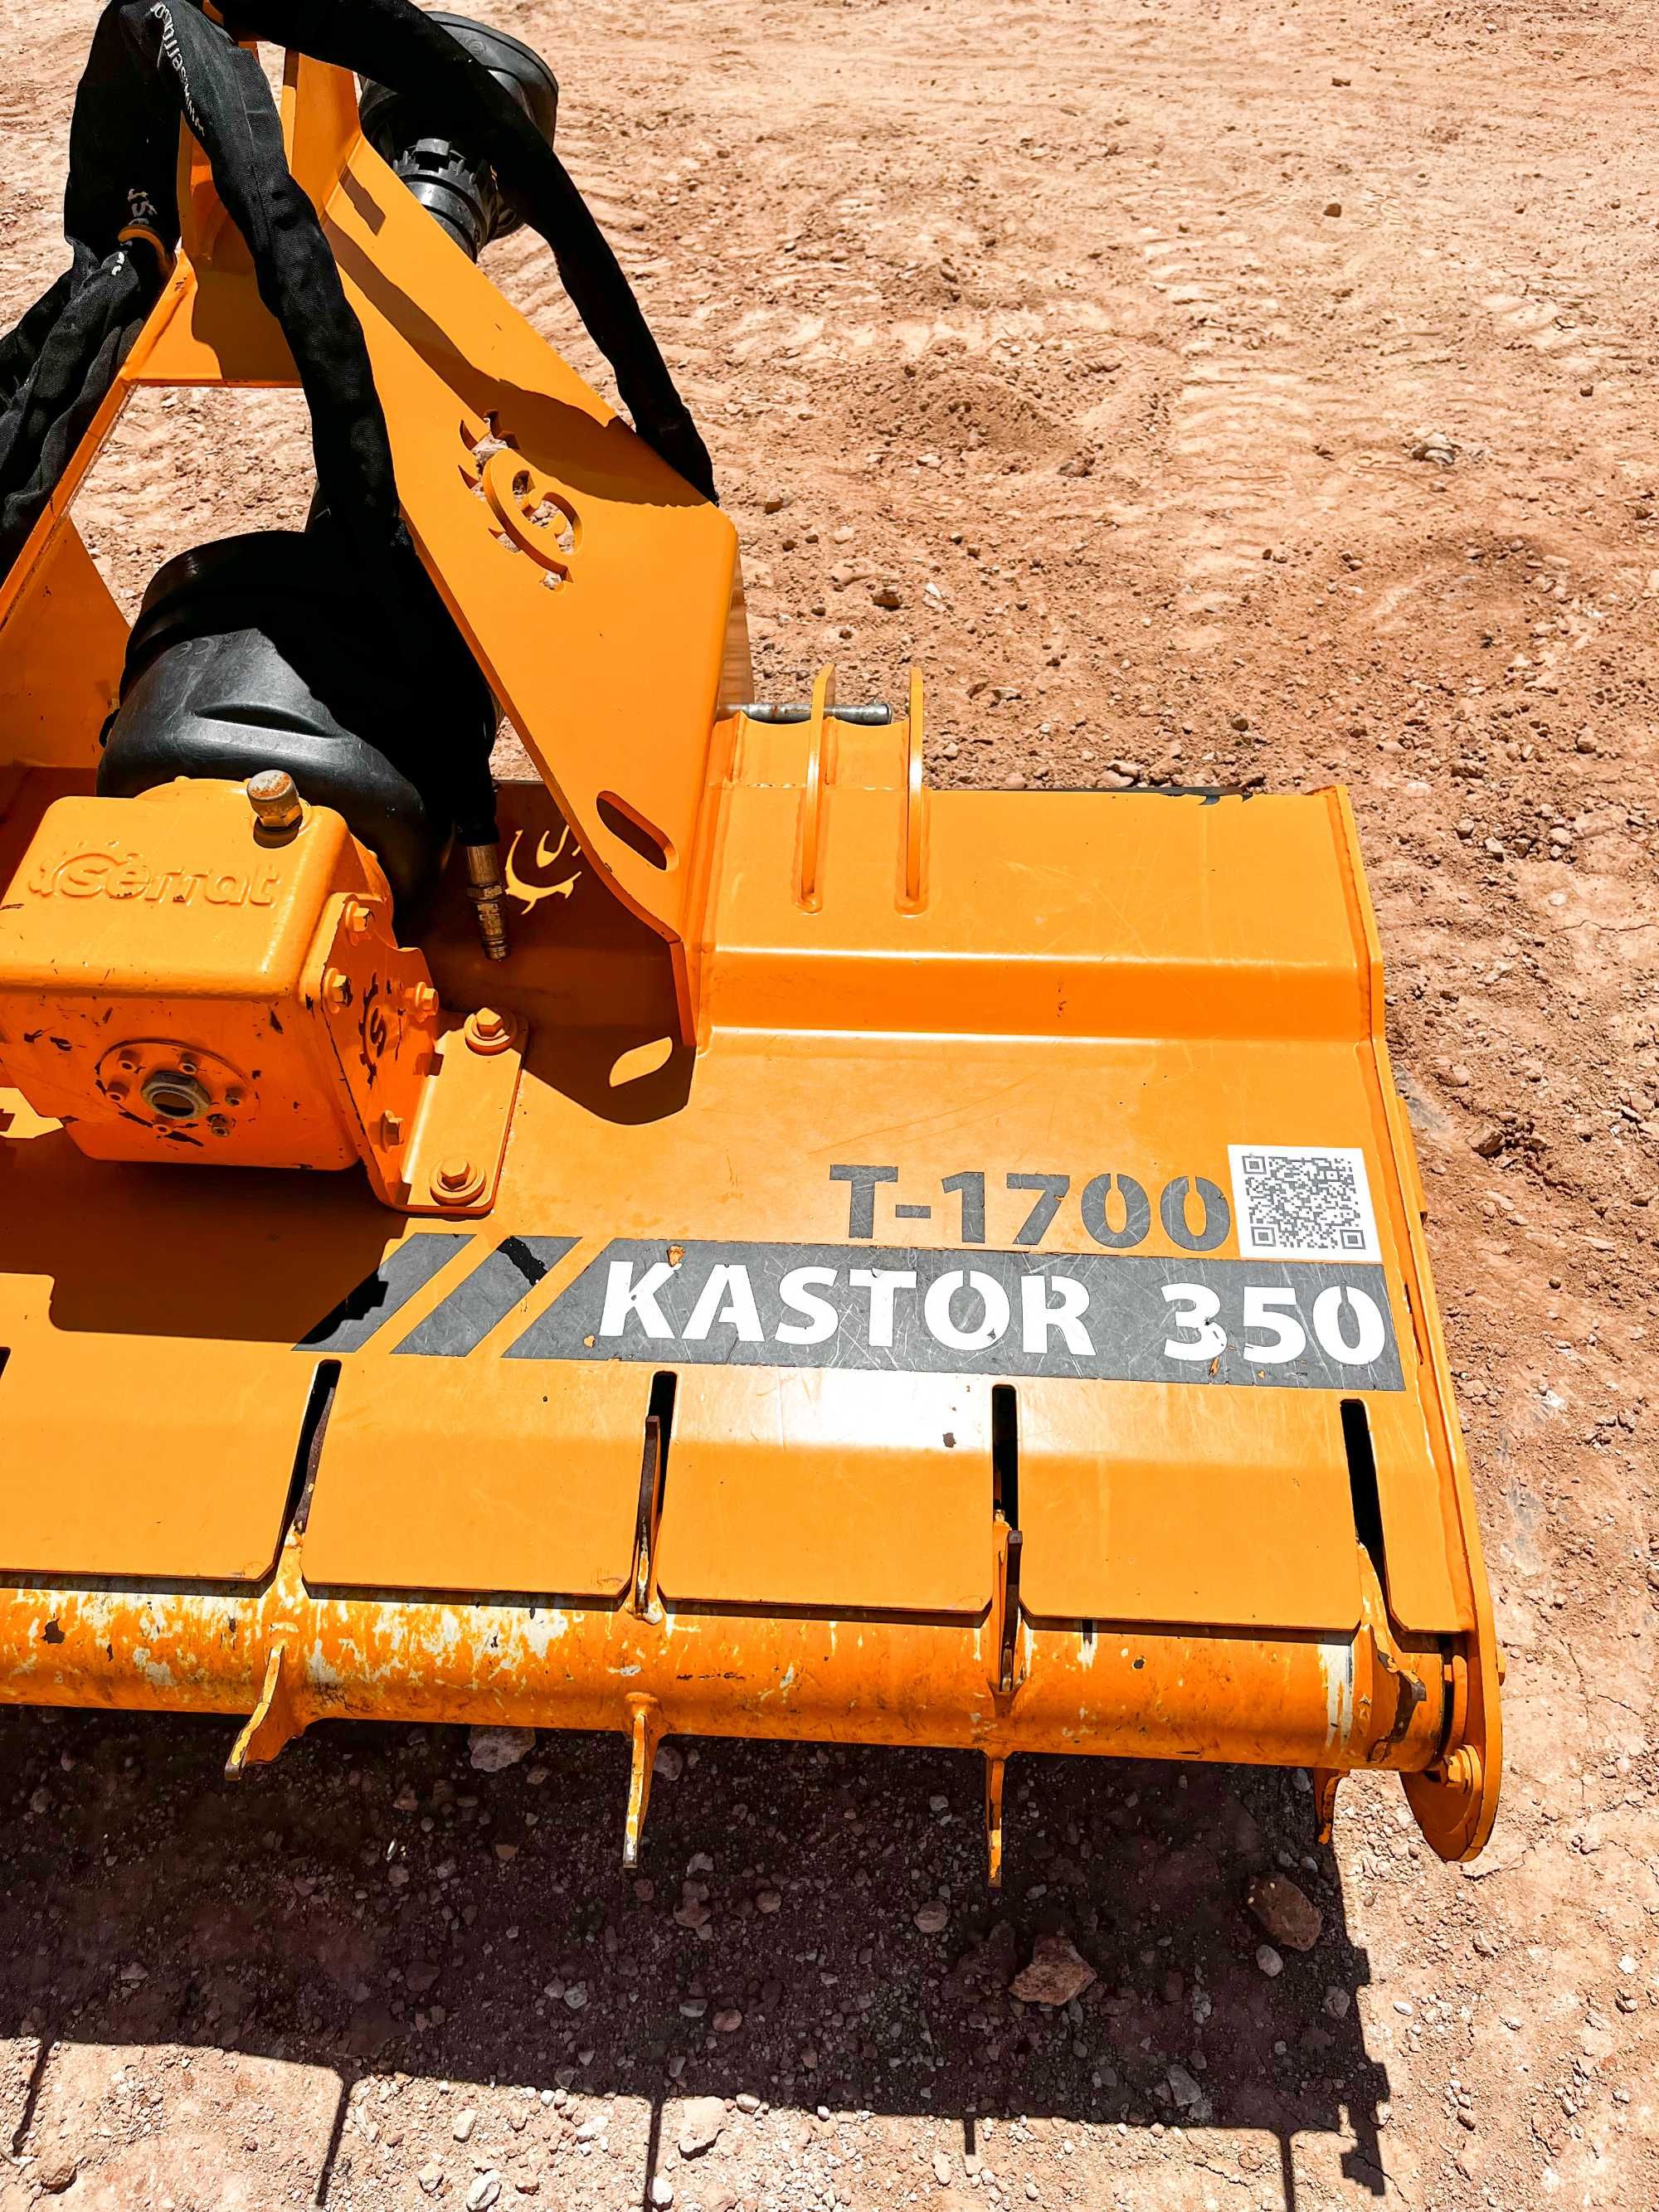 Serrat Kastor 350 T-1700